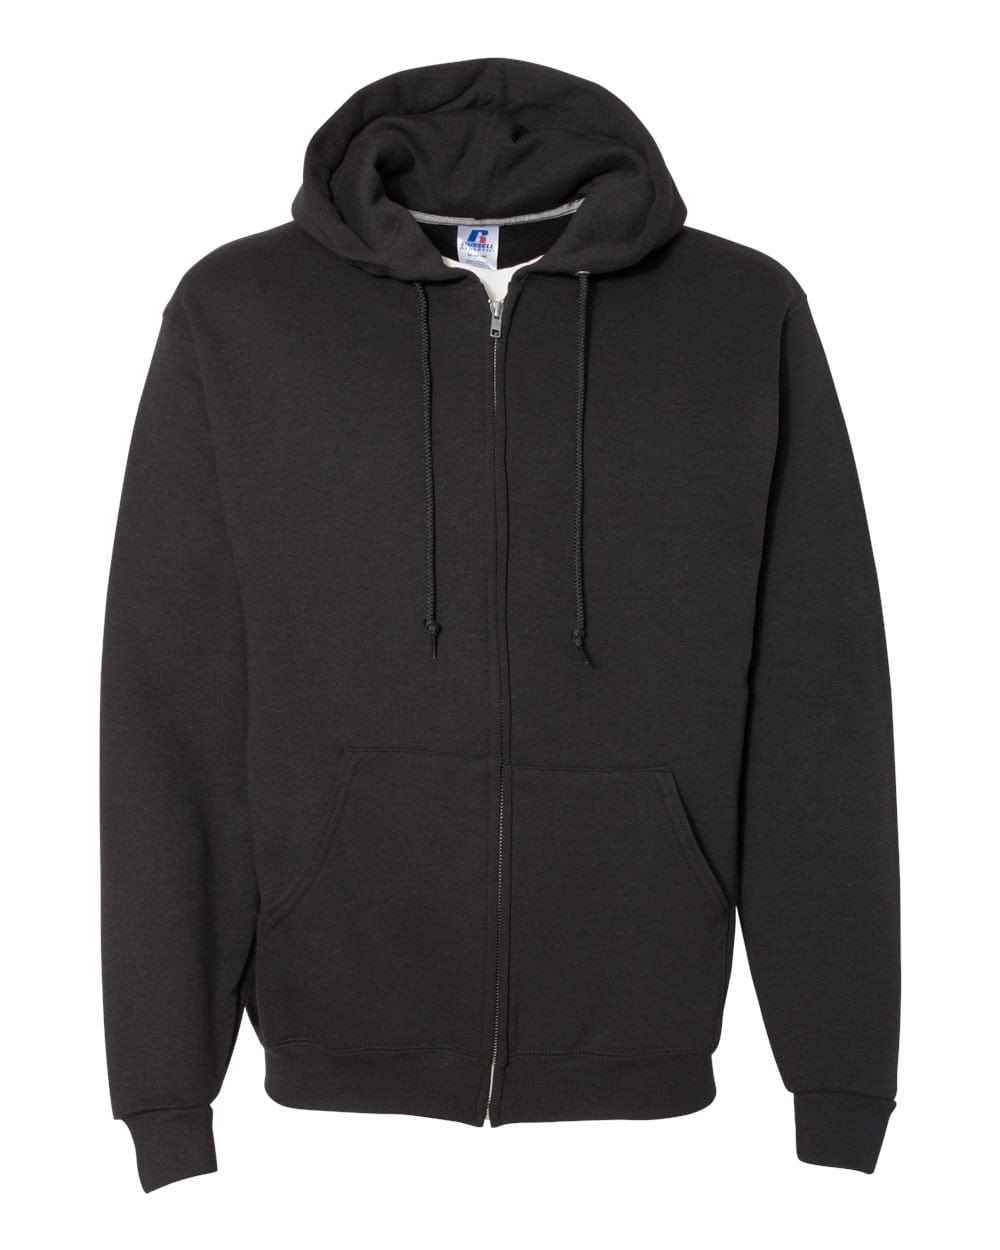 Russell Athletic Sweatshirts S / Black Russell Athletic - Men's Dri Power® Hooded Full-Zip Sweatshirt